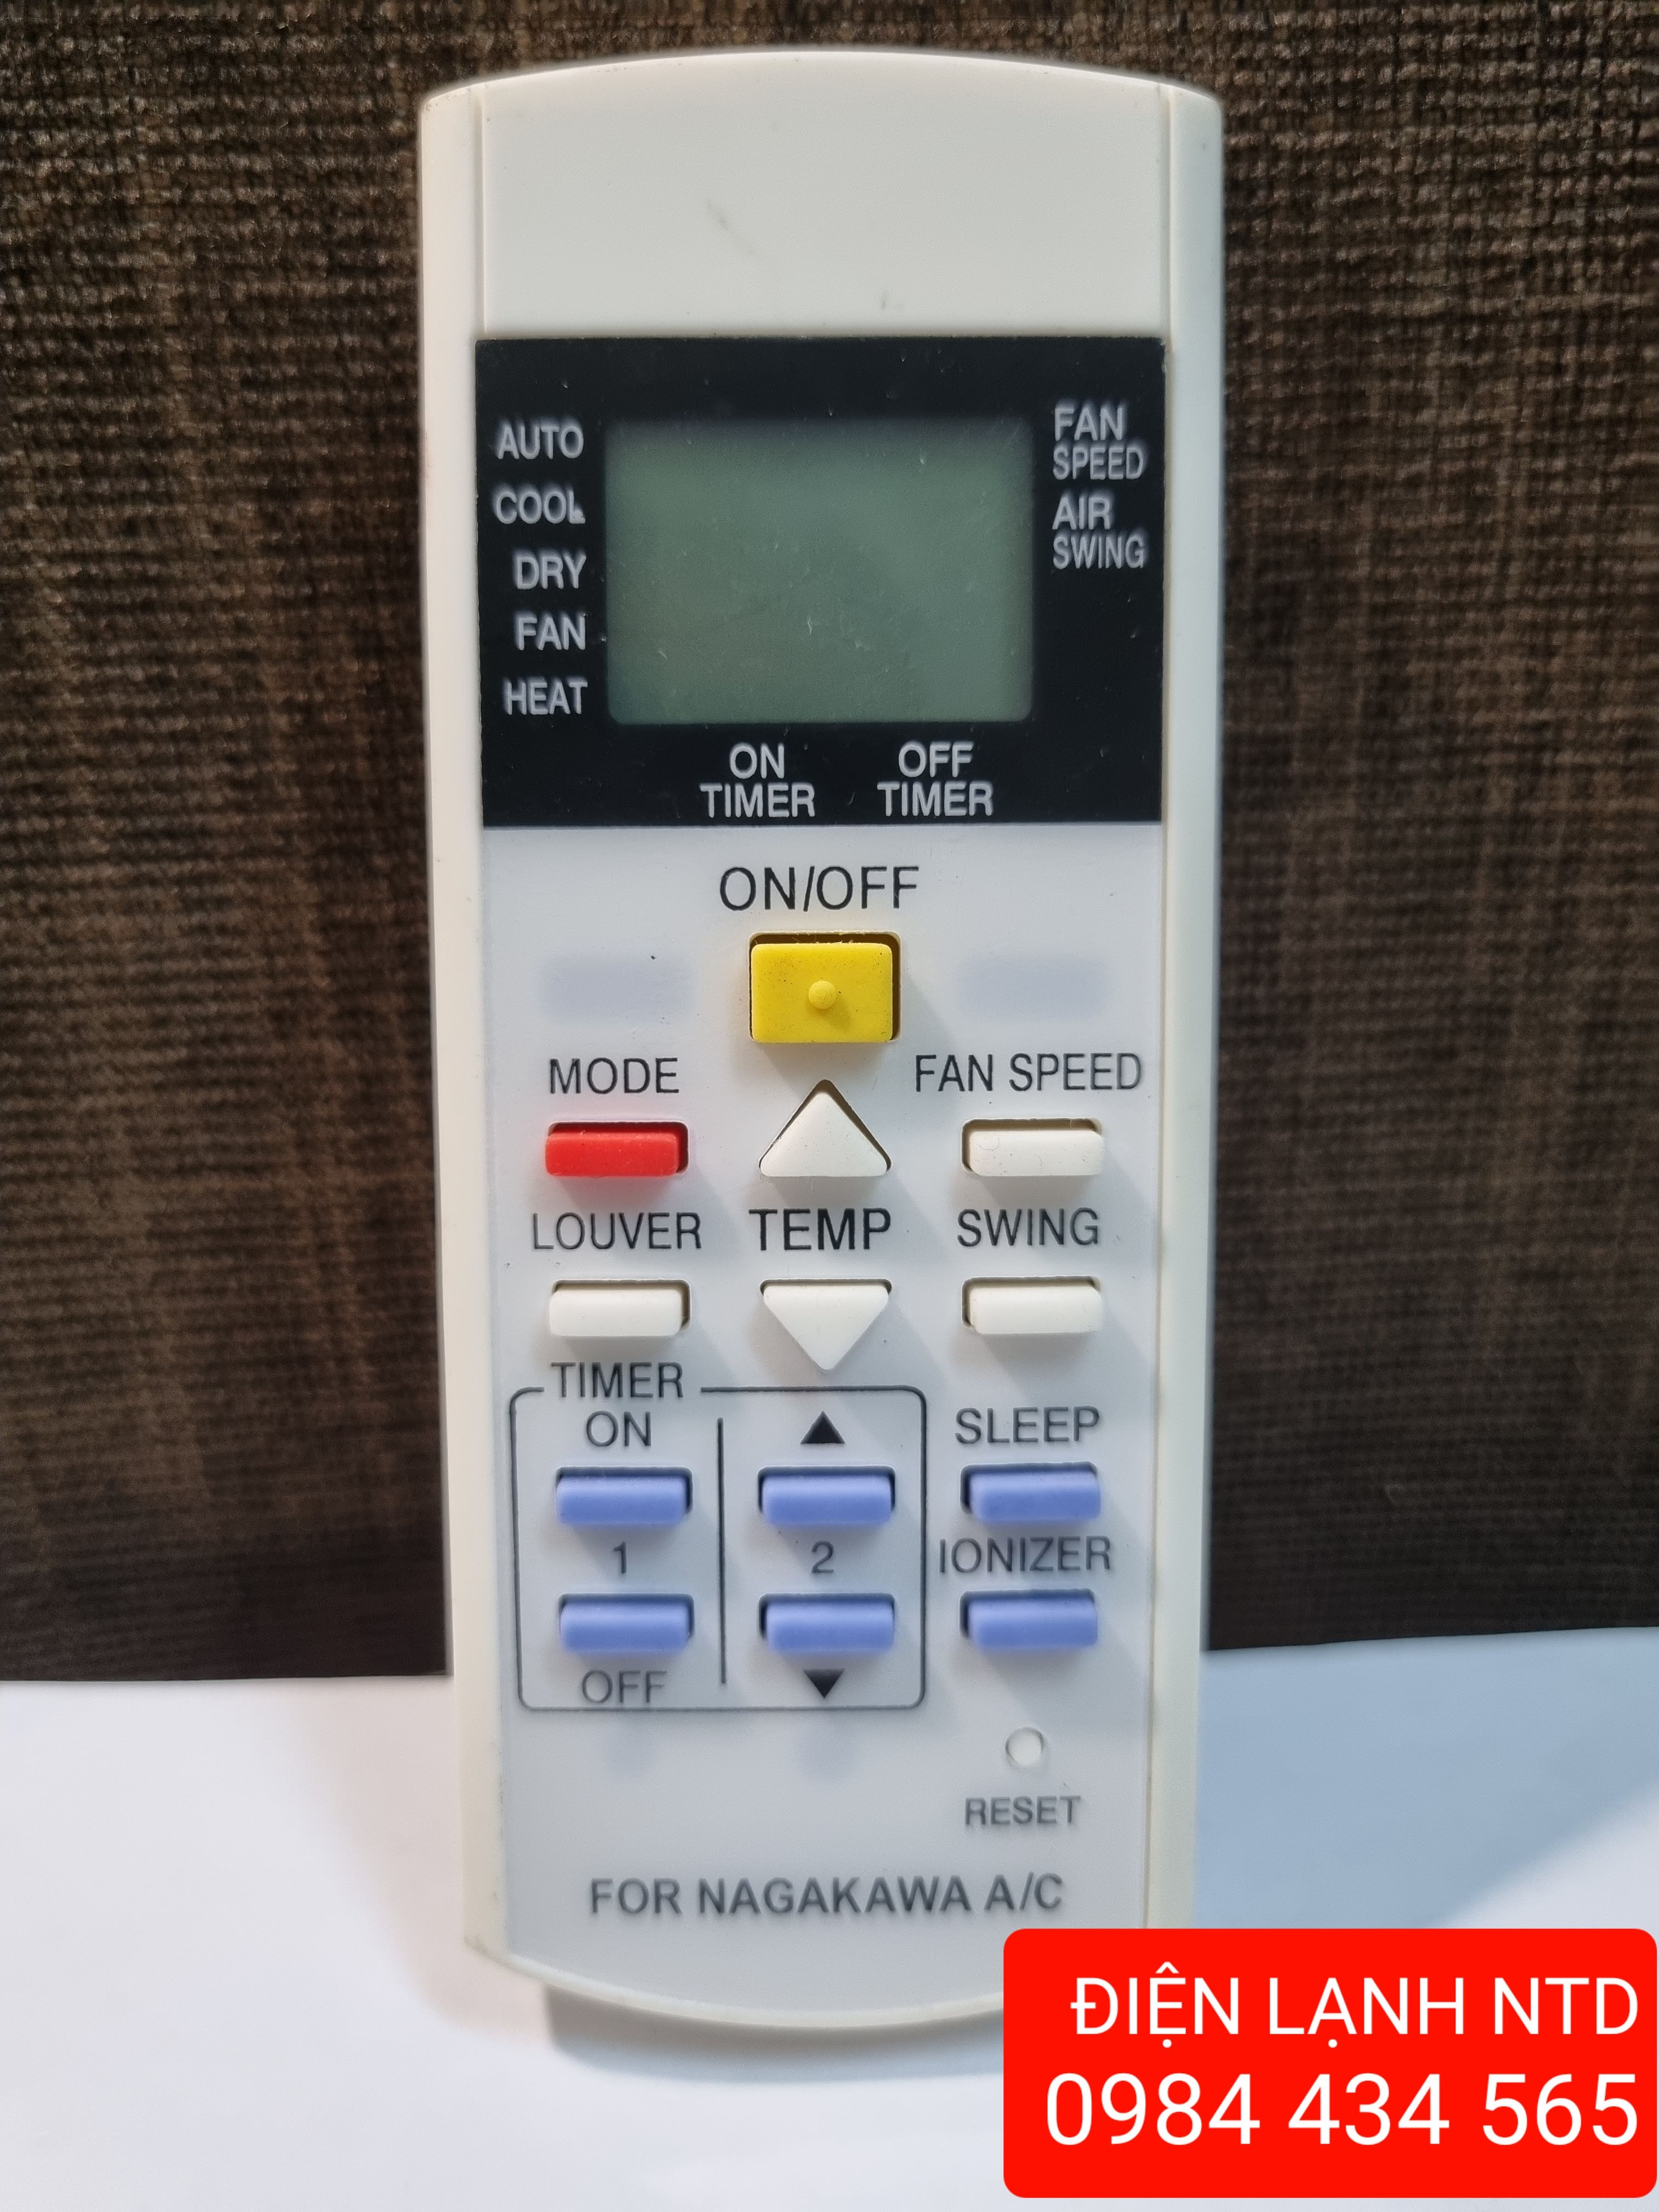 Điều khiển cho điều hòa Nagakawa bản nhỏ/remote máy lạnh Nagakawa